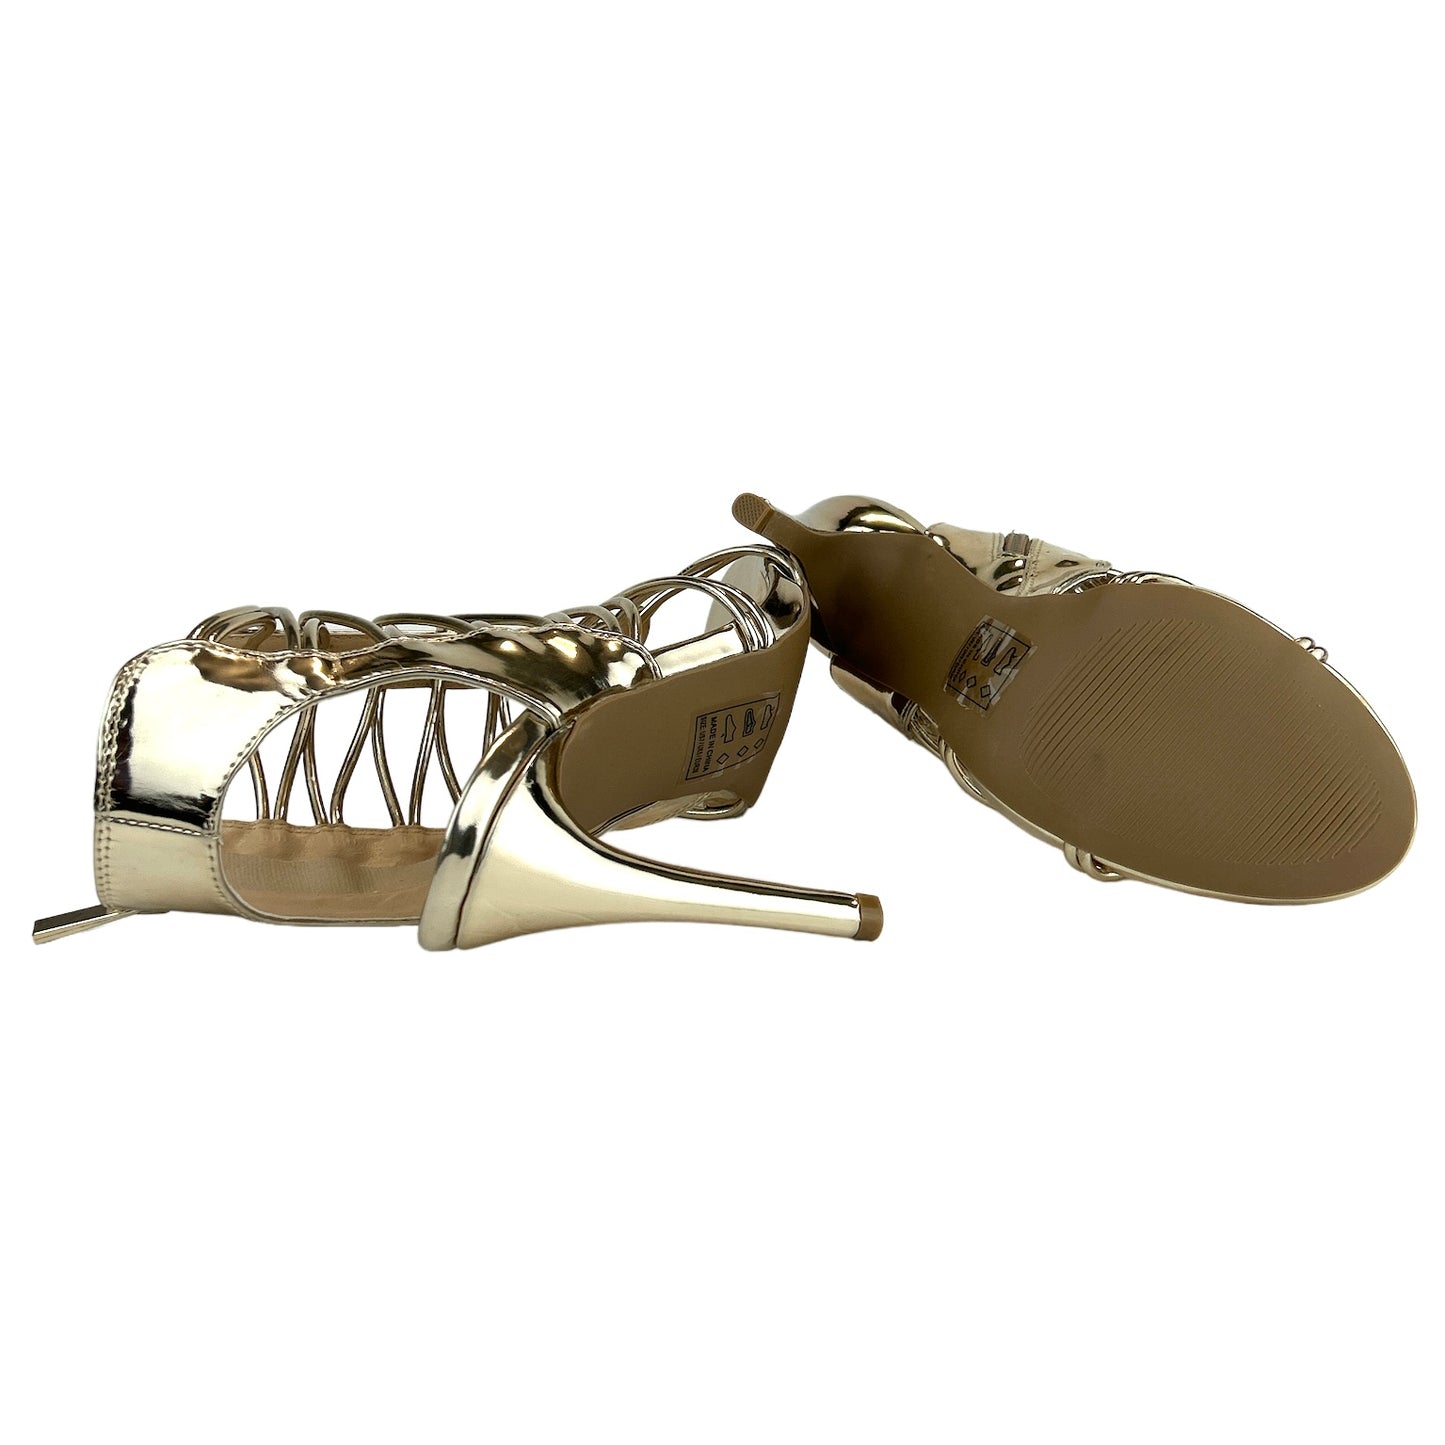 JEALOUS-18 Metallic Champagne Size 7 Heels Women's Dress Sandals